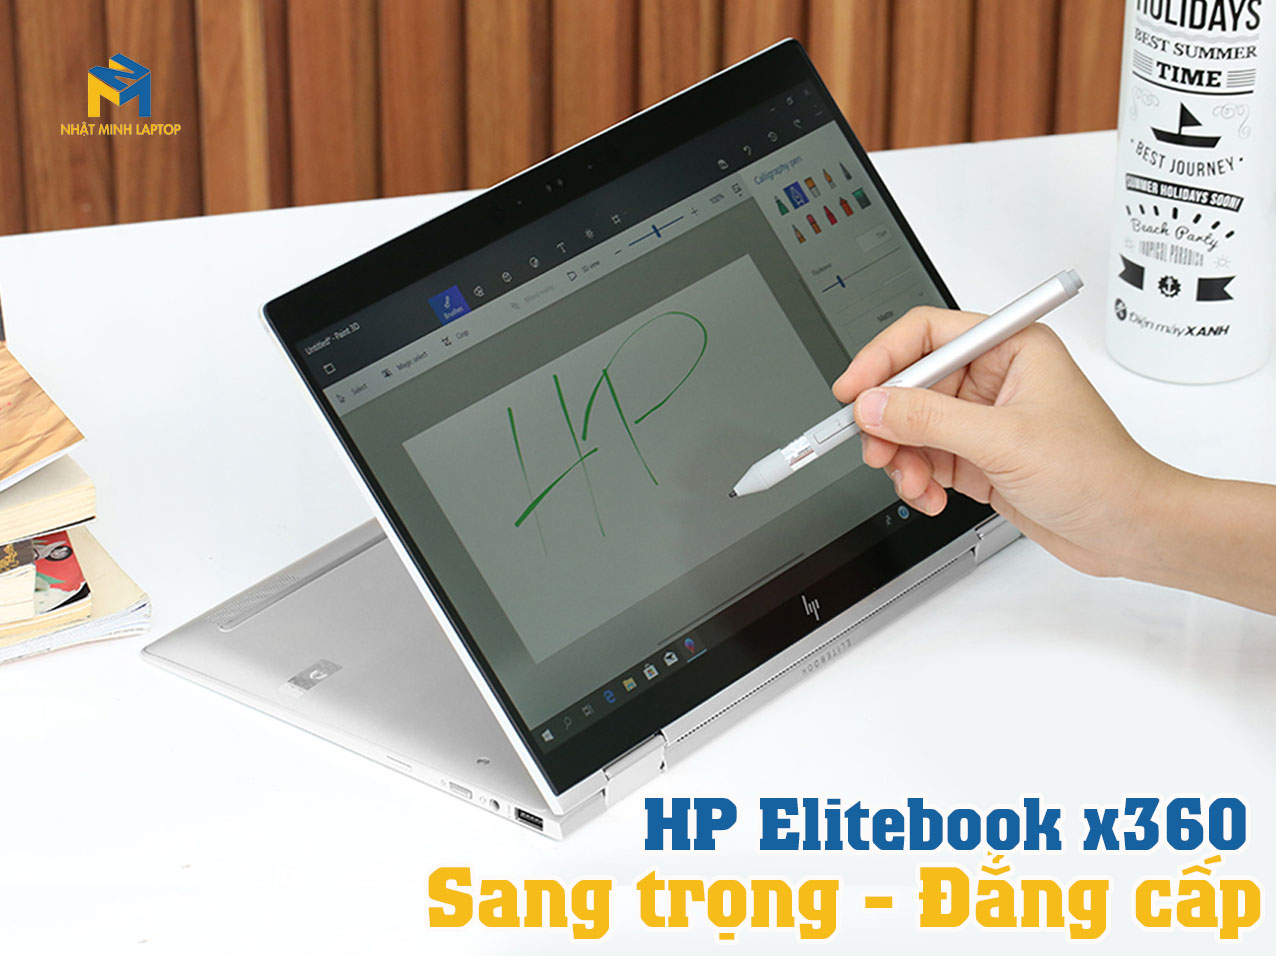 Laptop HP Elitebook X360 sở hữu thiết kế sang trọng, đẳng cấp